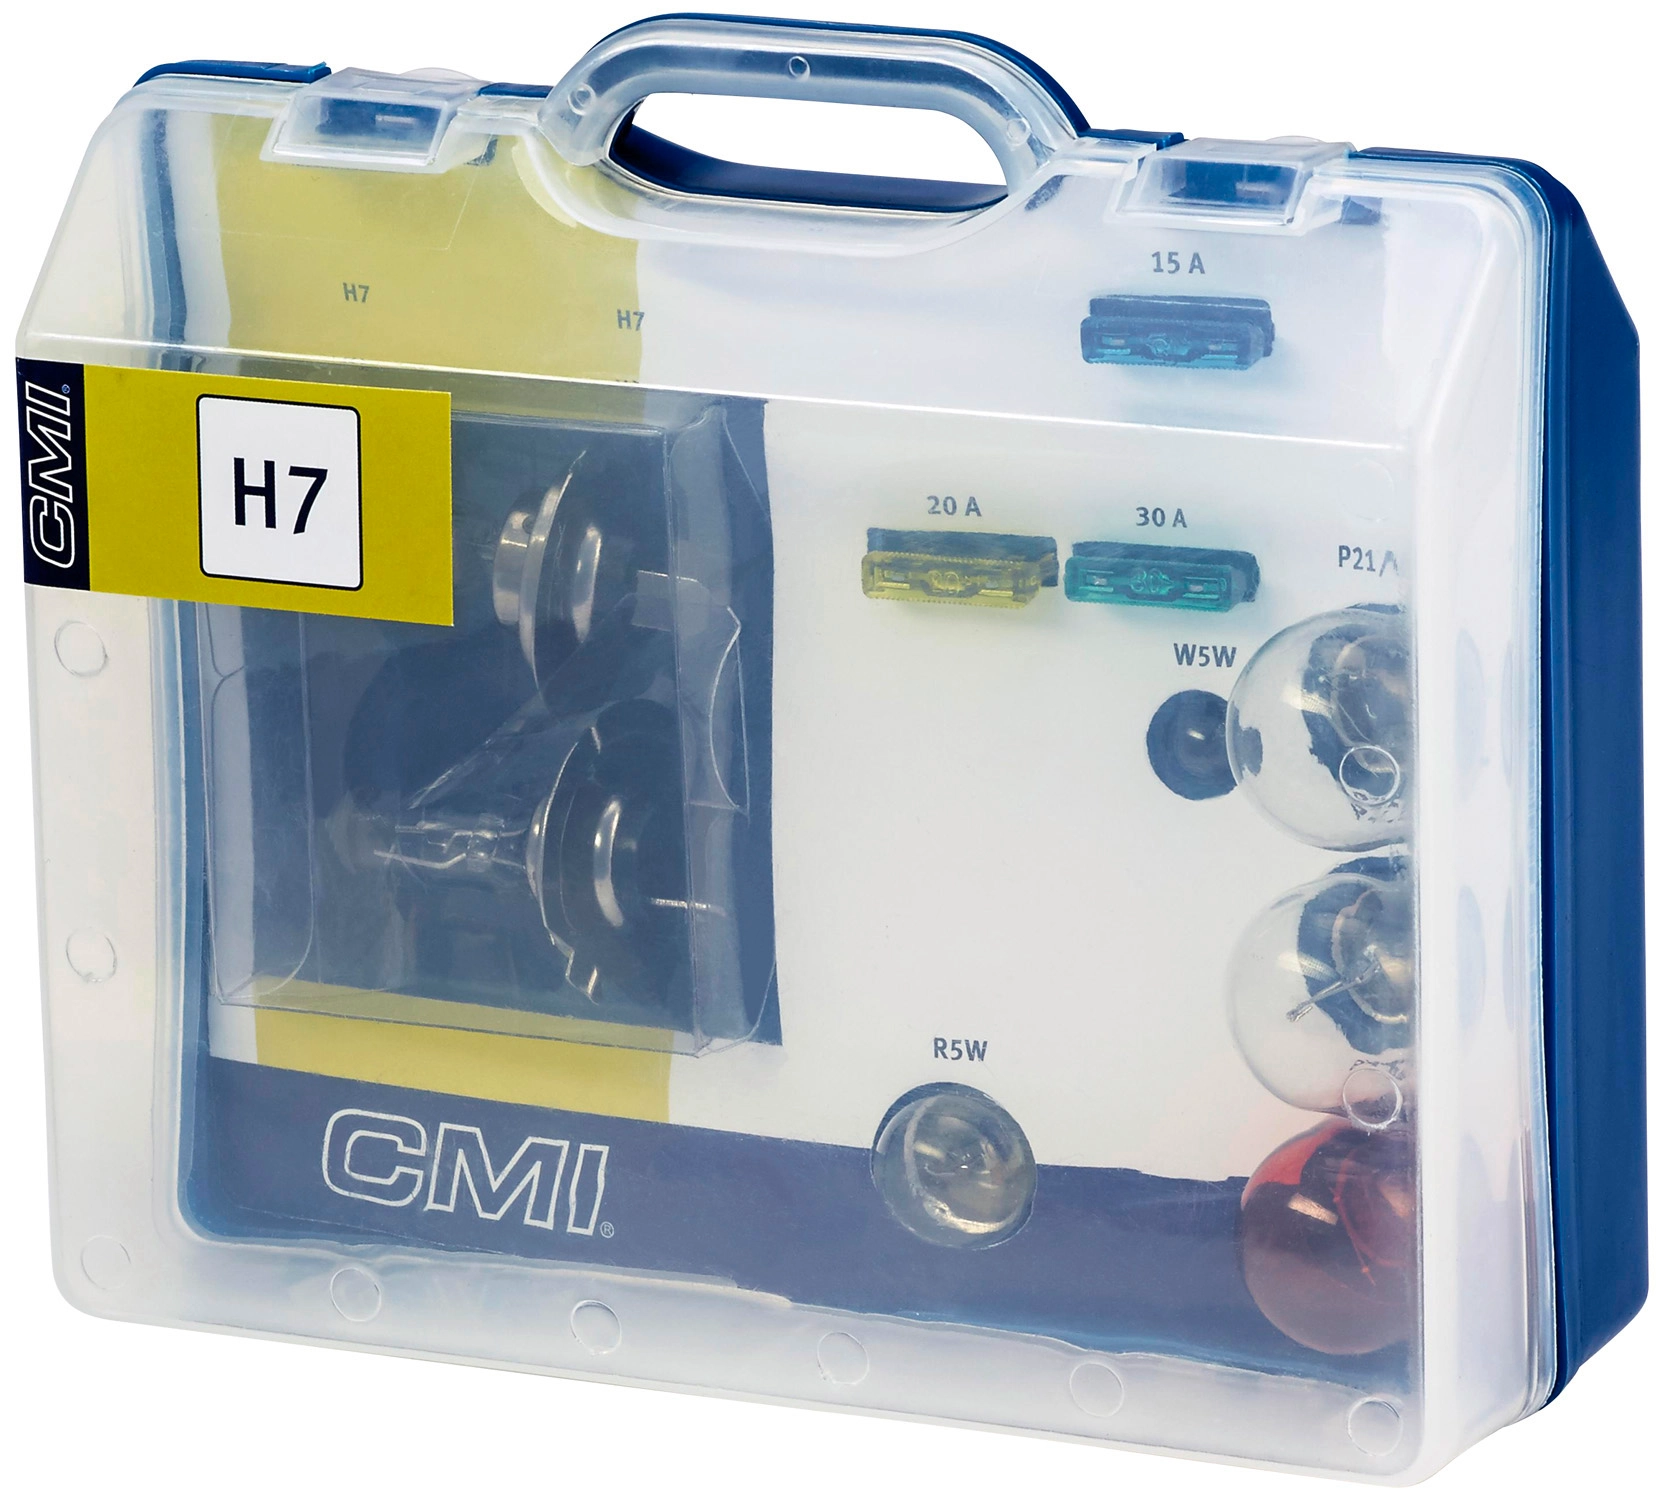 H7 Auto Lampen Set mit Sicherungen und weiteren Lämpchen